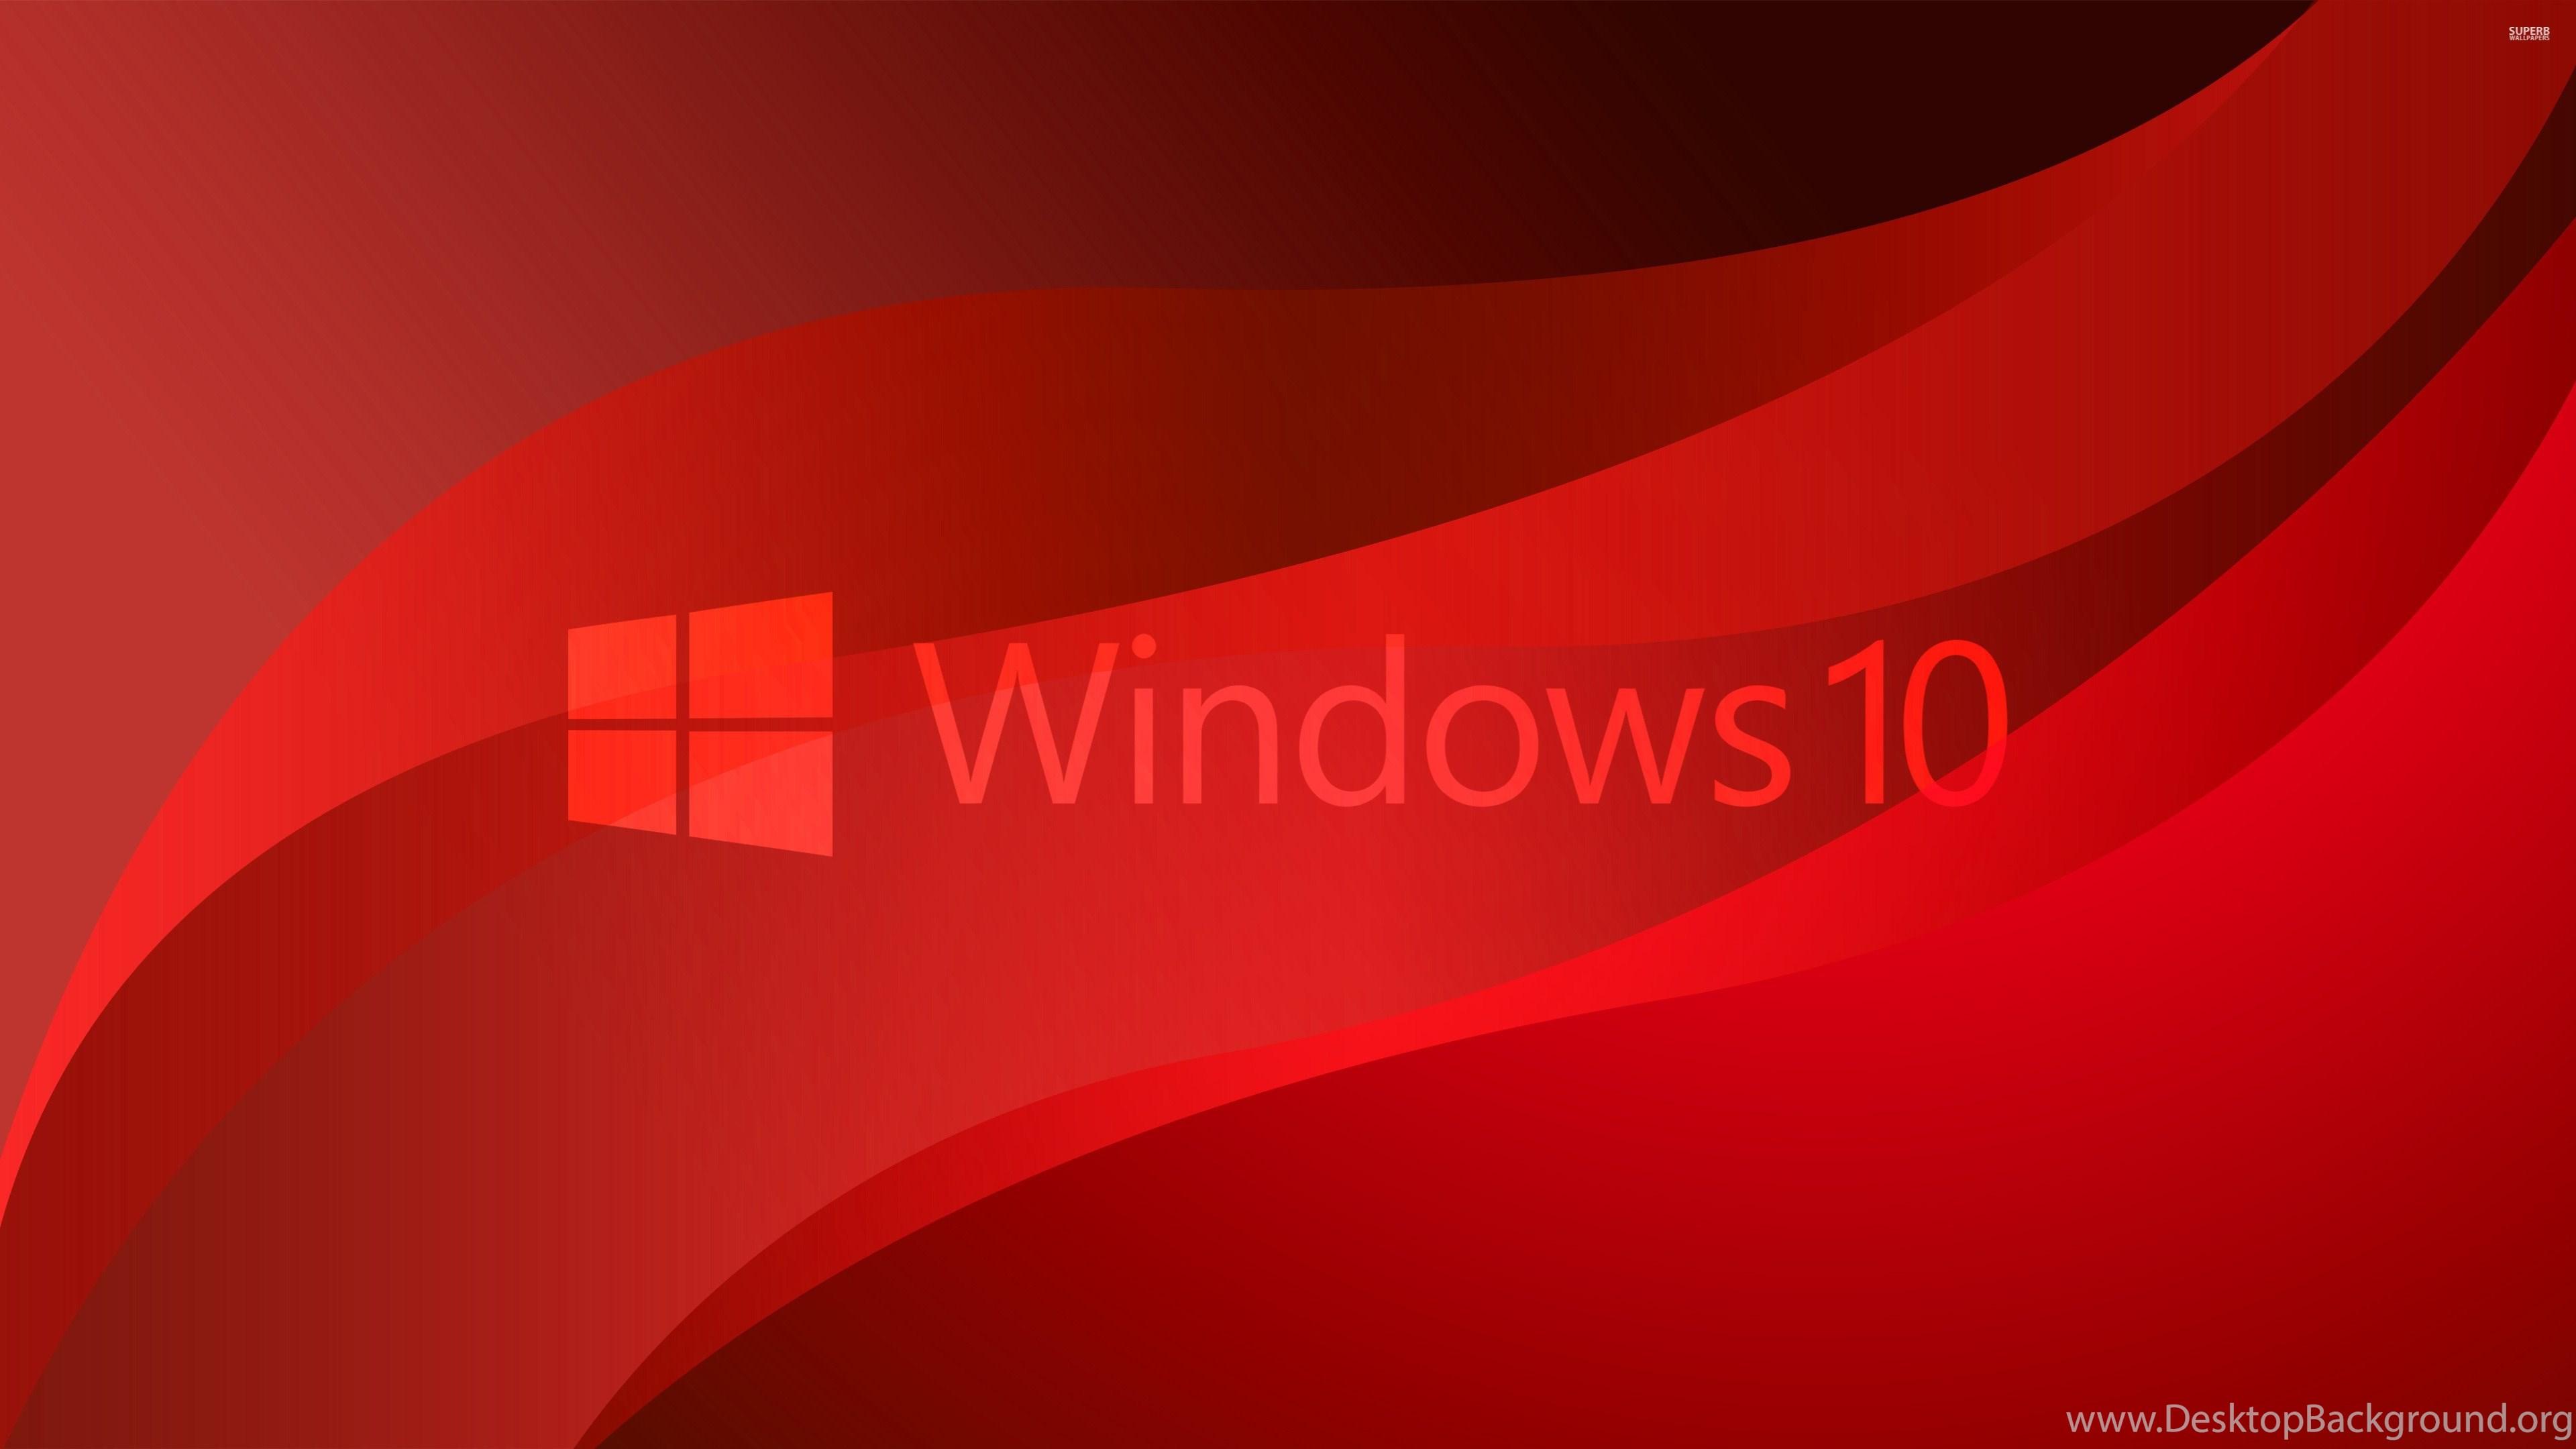 Windows 10 Transparent Logo On Red Waves Wallpaper Computer. Desktop Background